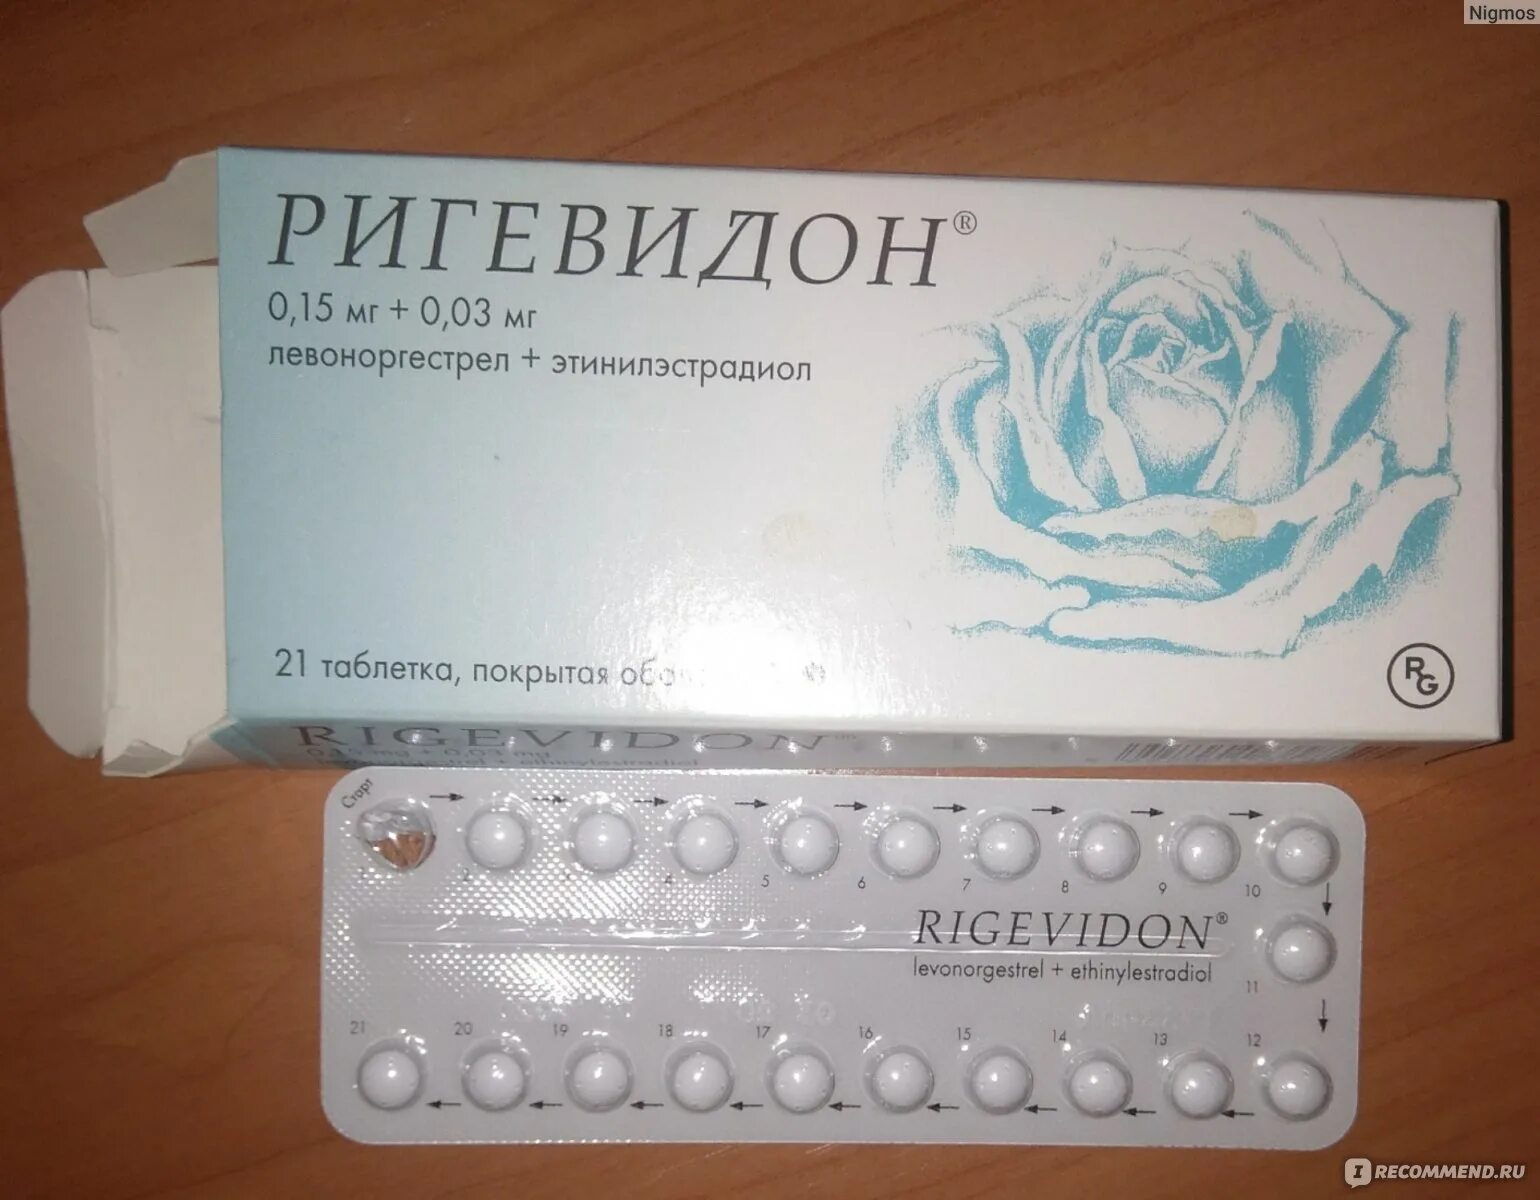 Можно пропускать противозачаточные таблетки. Противозачаточные таблетки ригевидон. Гормональный препарат ригевидон. Противозачаточные таблетки для женщин ригевидон. Таблетки противозачаточные реговидон.